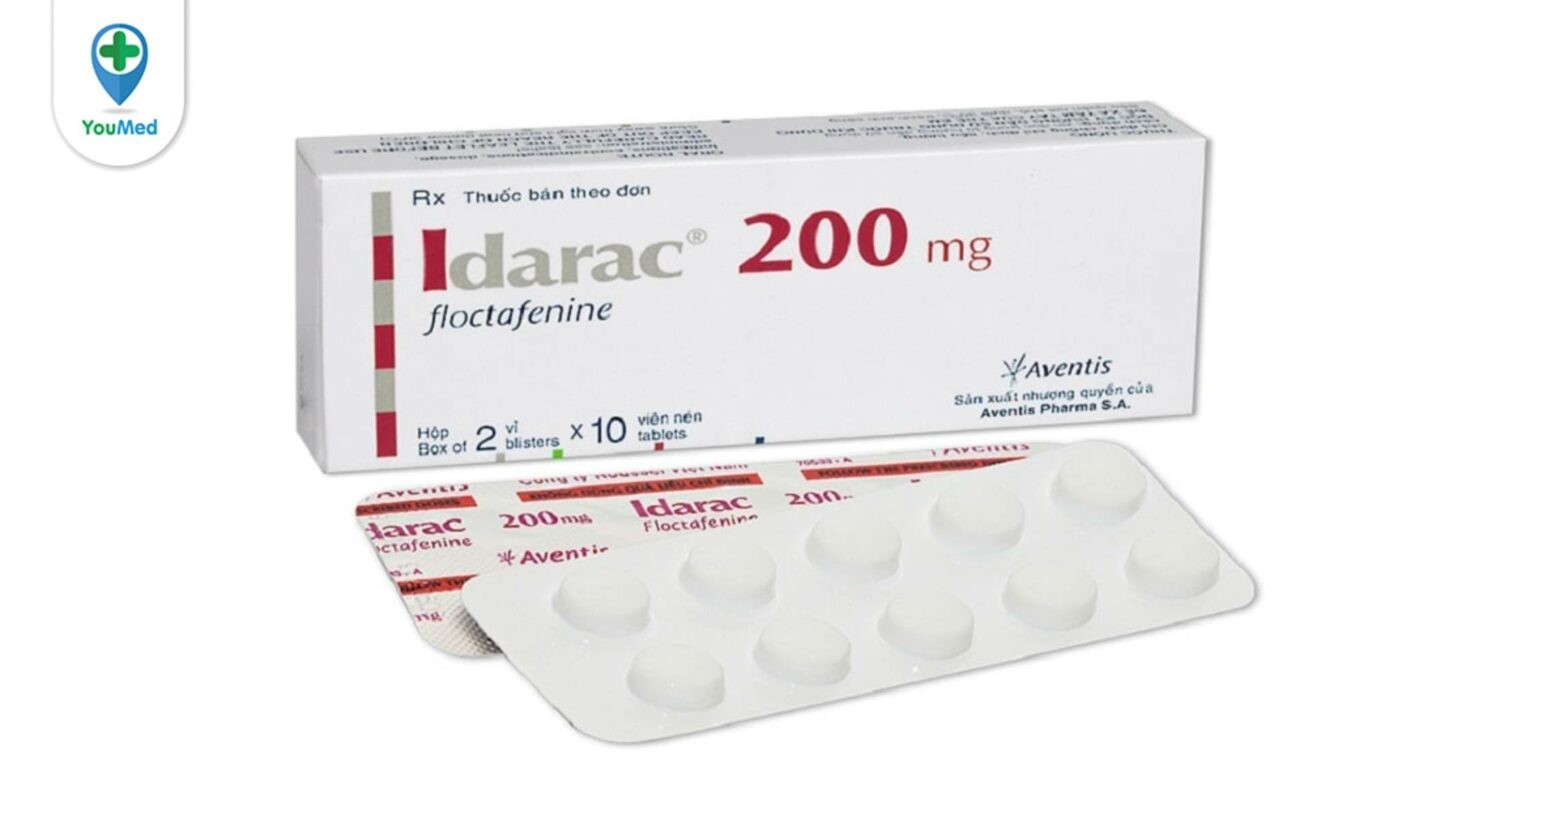 Idarac 200mg là thuốc gì? giá, công dụng và cách dùng hiệu quả